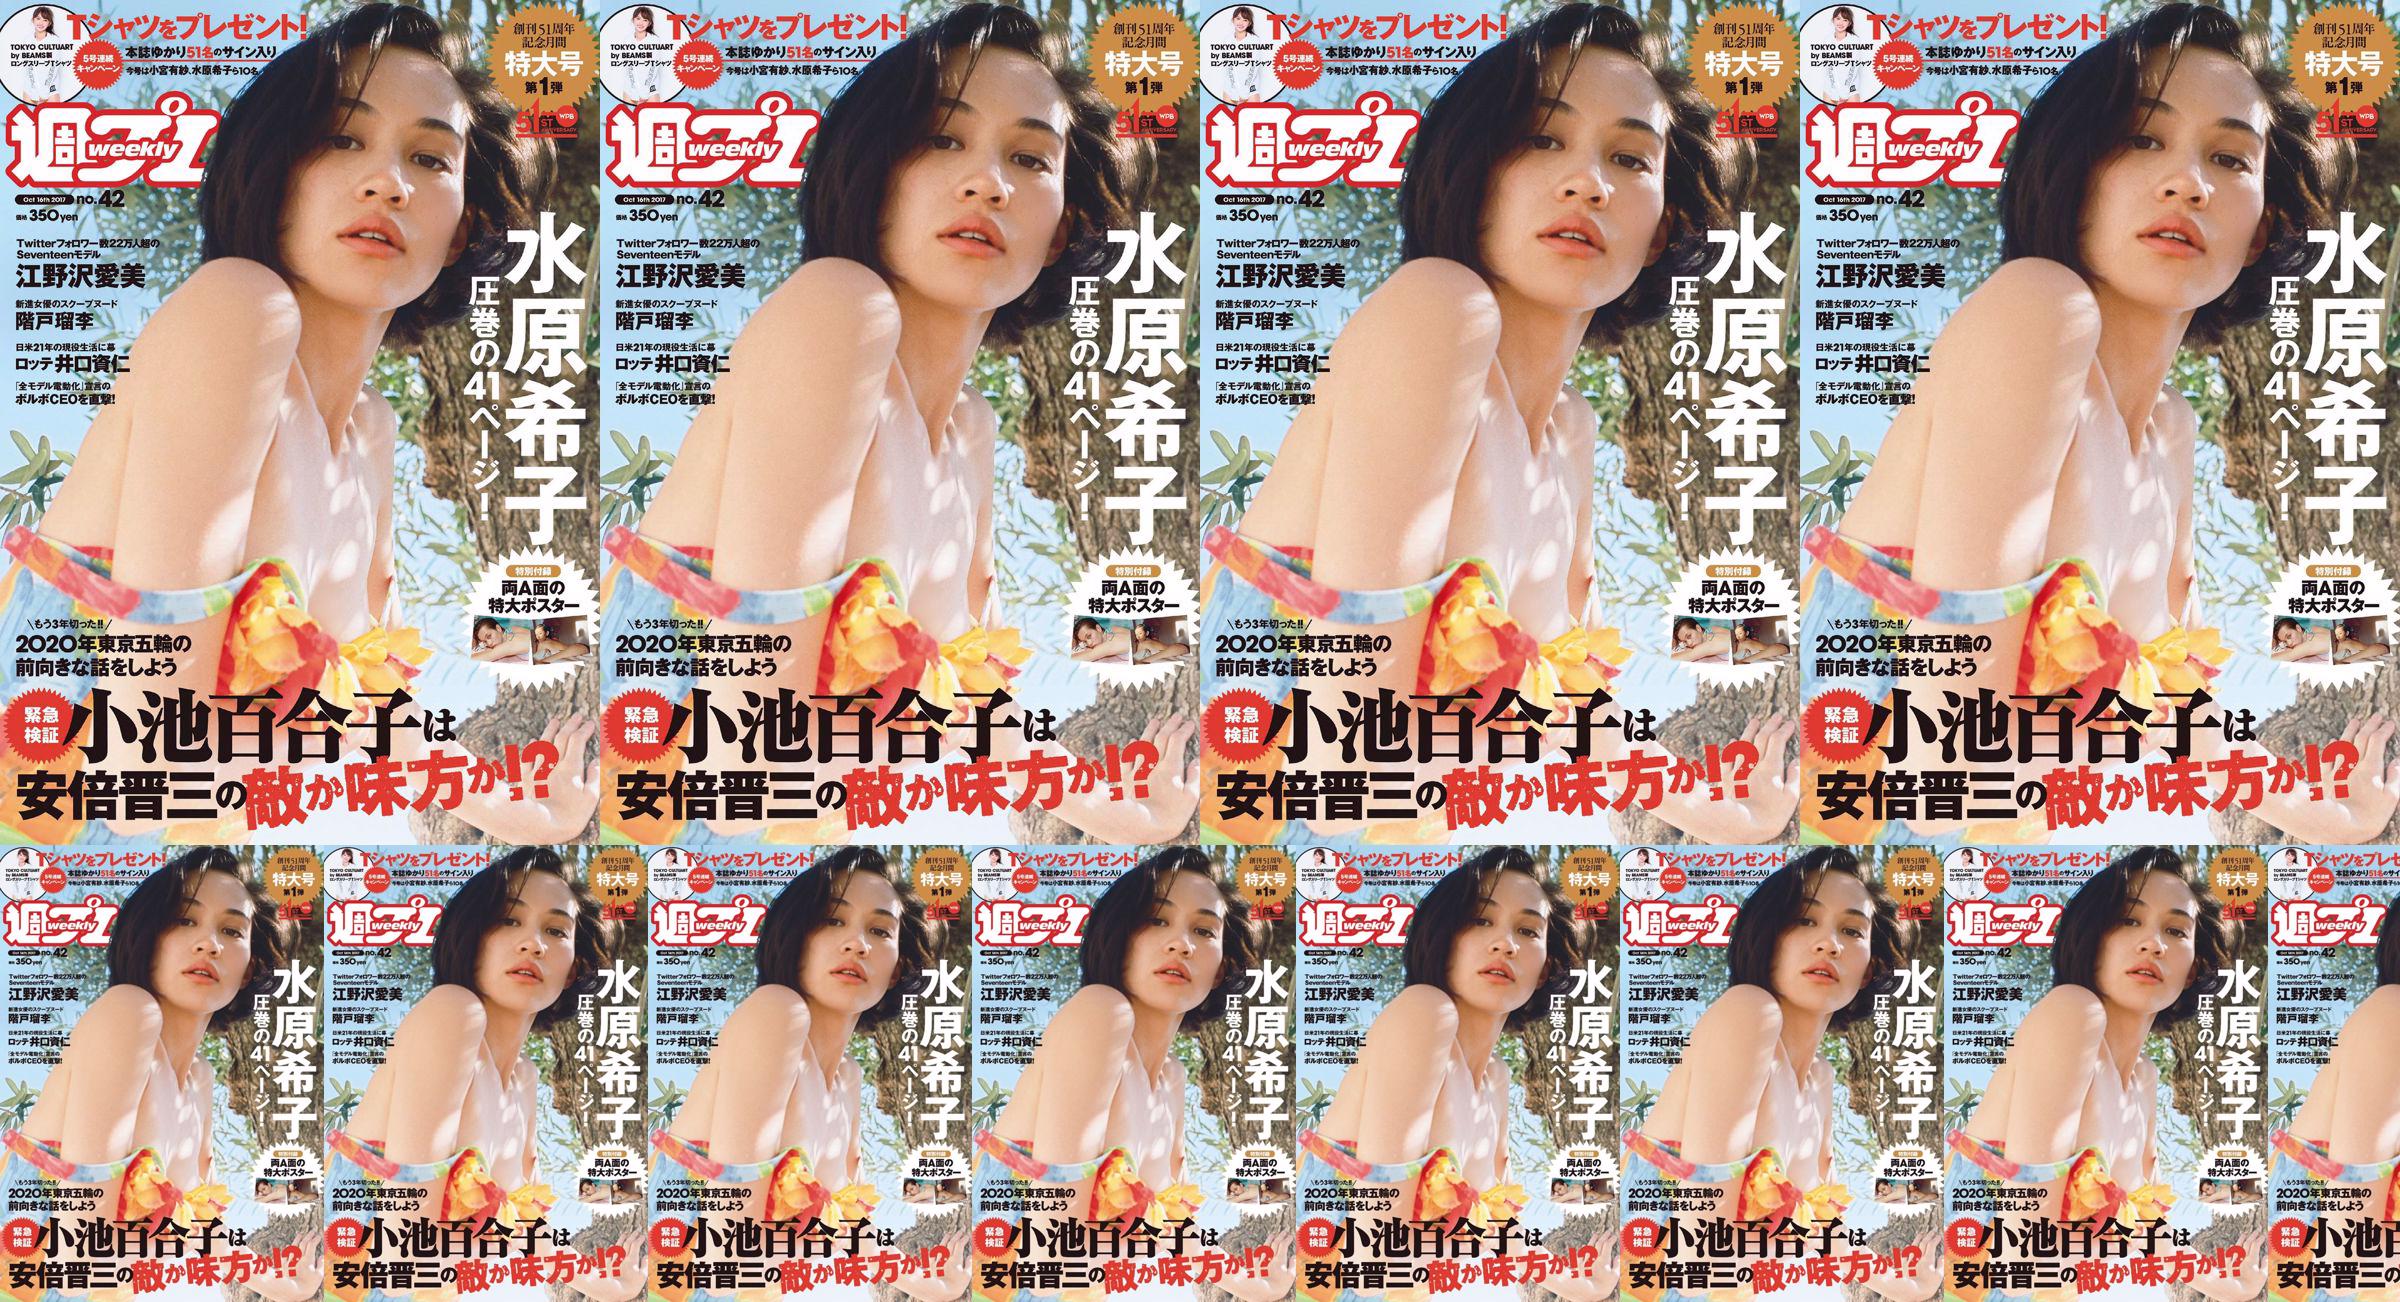 Kiko Mizuhara Manami Enosawa Serina Fukui Miu Nakamura Ruri Shinato [Weekly Playboy] 2017 No.42 Photo Magazine No.2f29d5 Trang 2